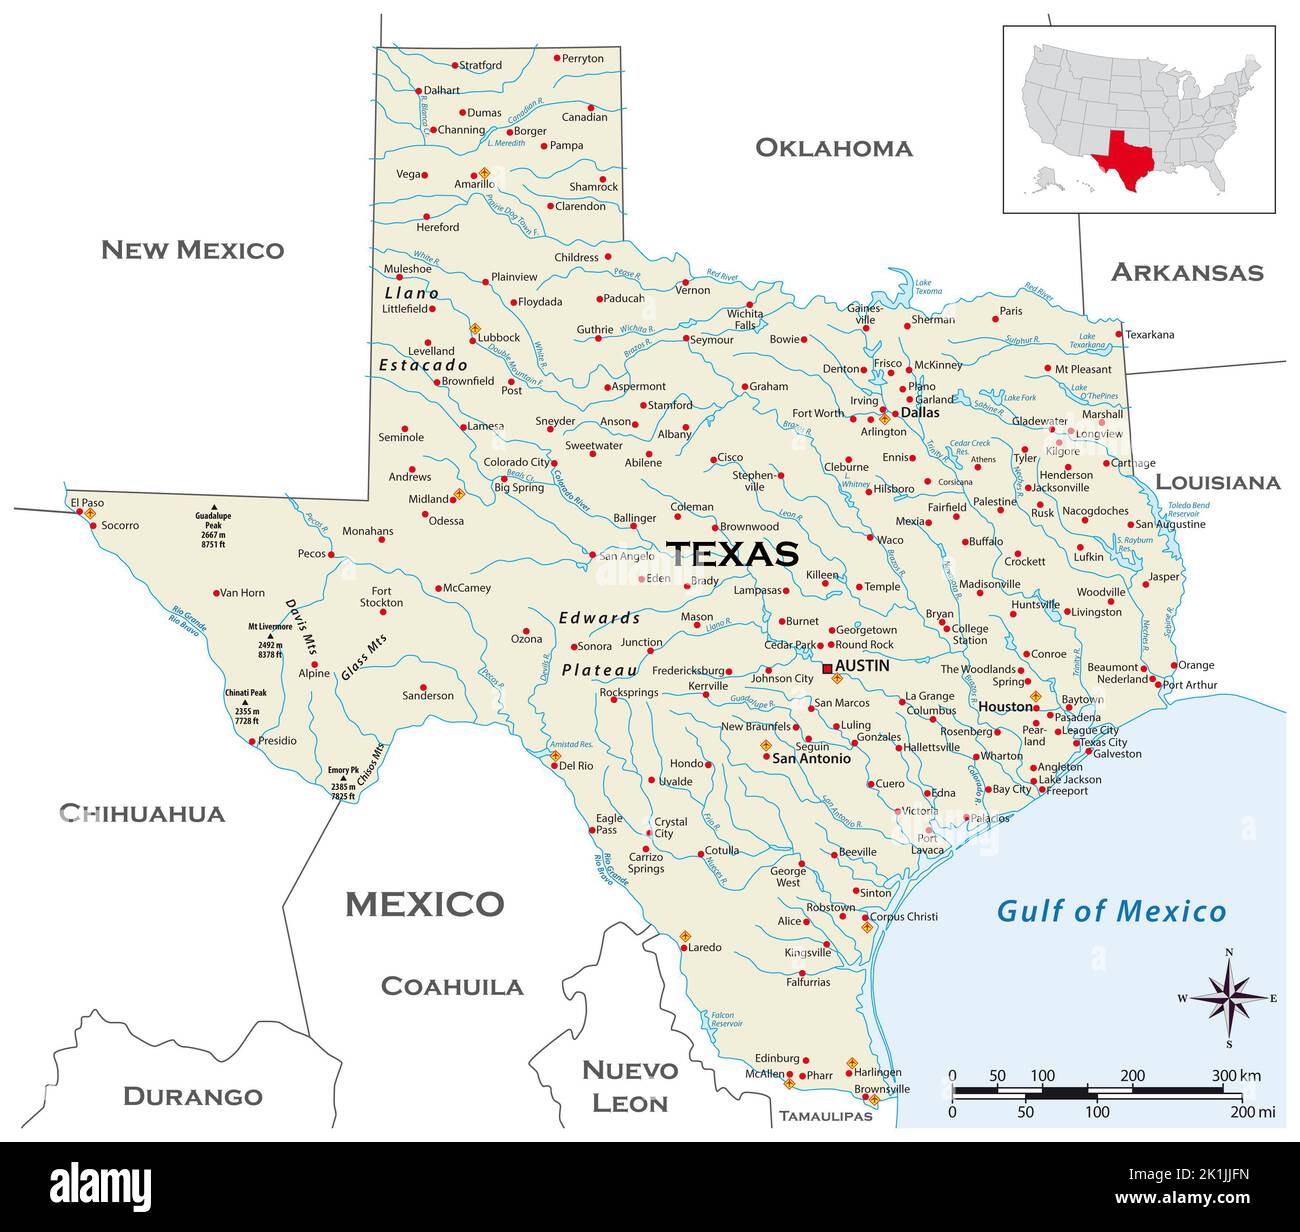 Mapa físico muy detallado del estado de Texas en los Estados Unidos Foto de stock